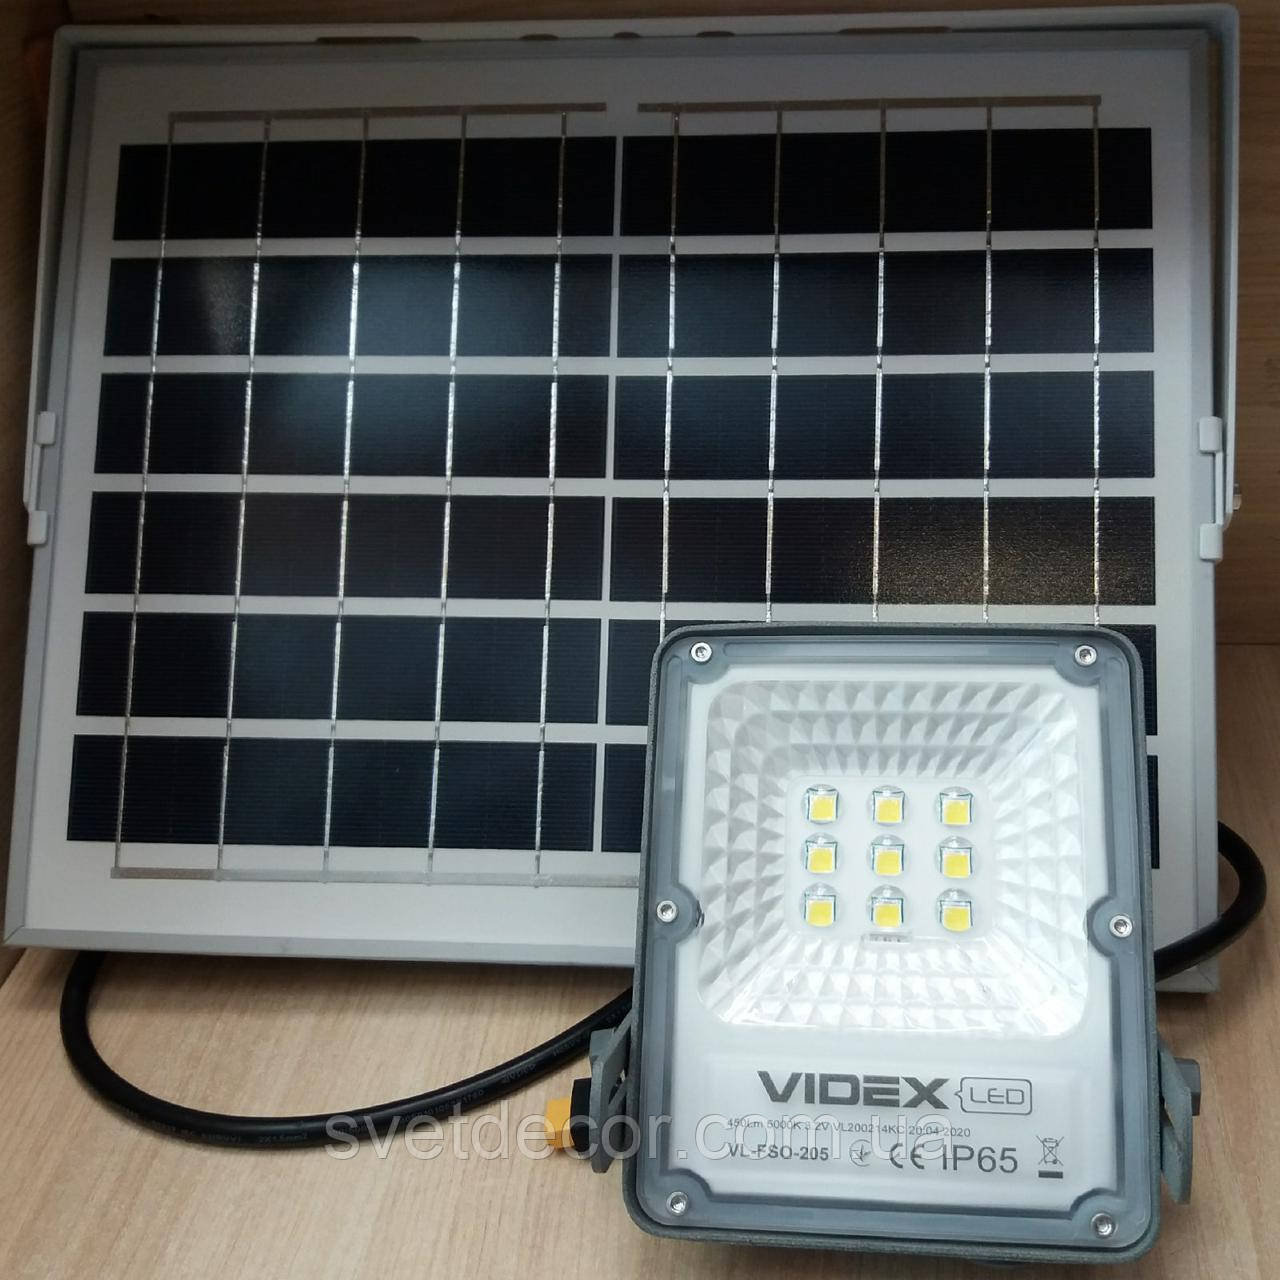 Світлодіодний LED прожектор автономний VIDEX 10 W 5000 K 3.2 VL-FSO-205 на сонячній батареї